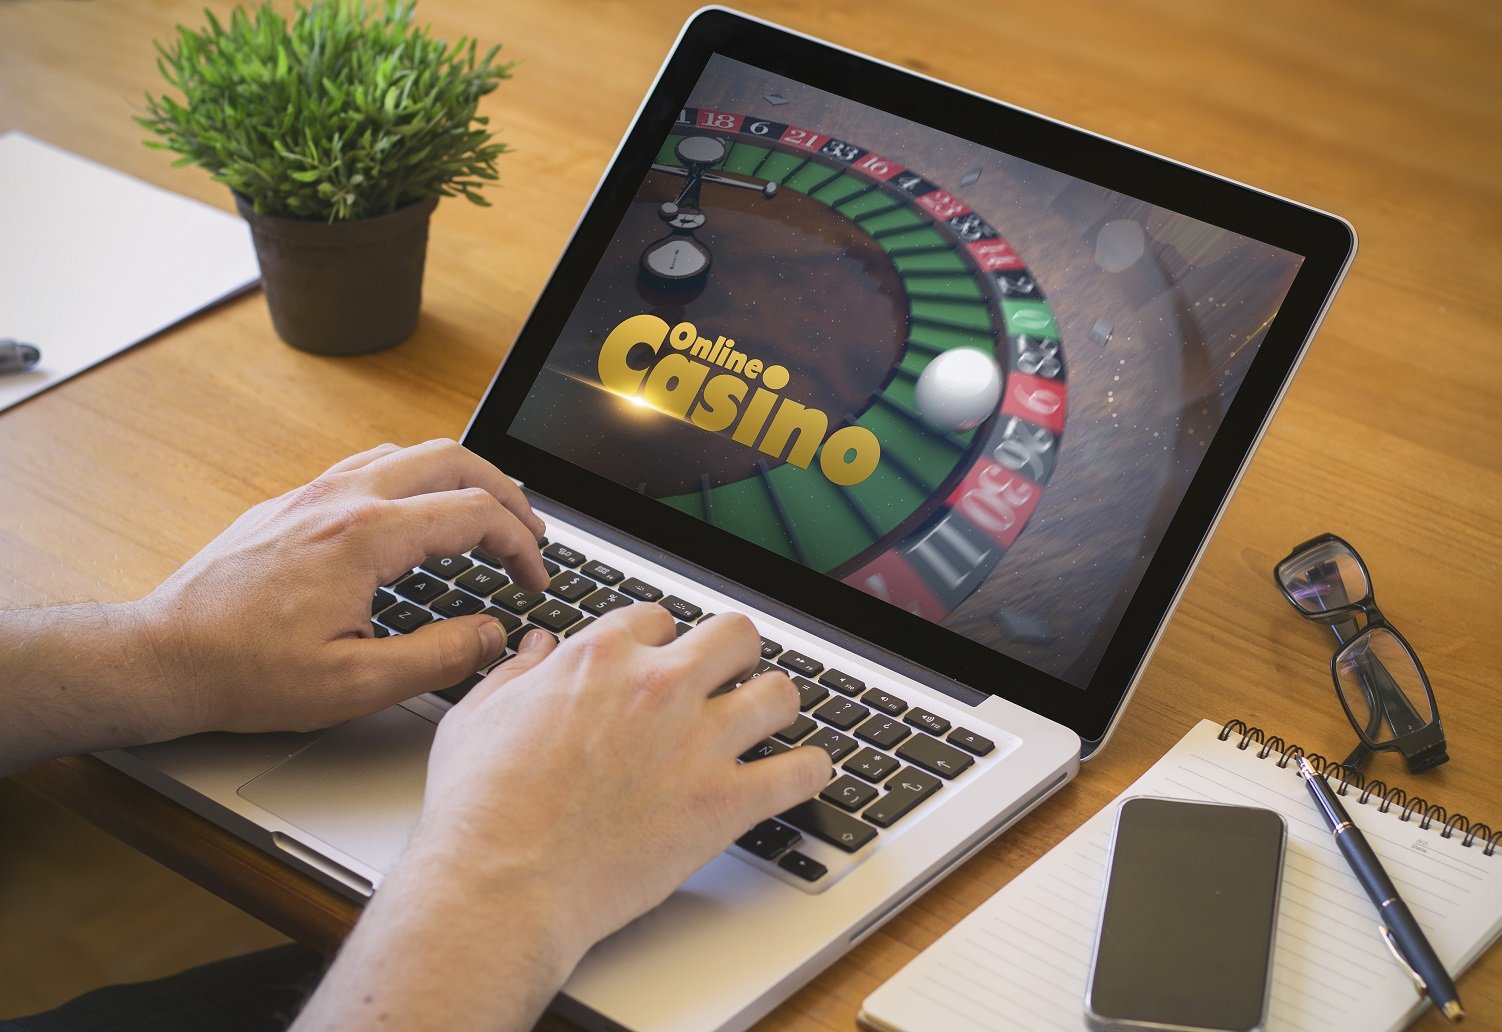 Sichere Online Casinos